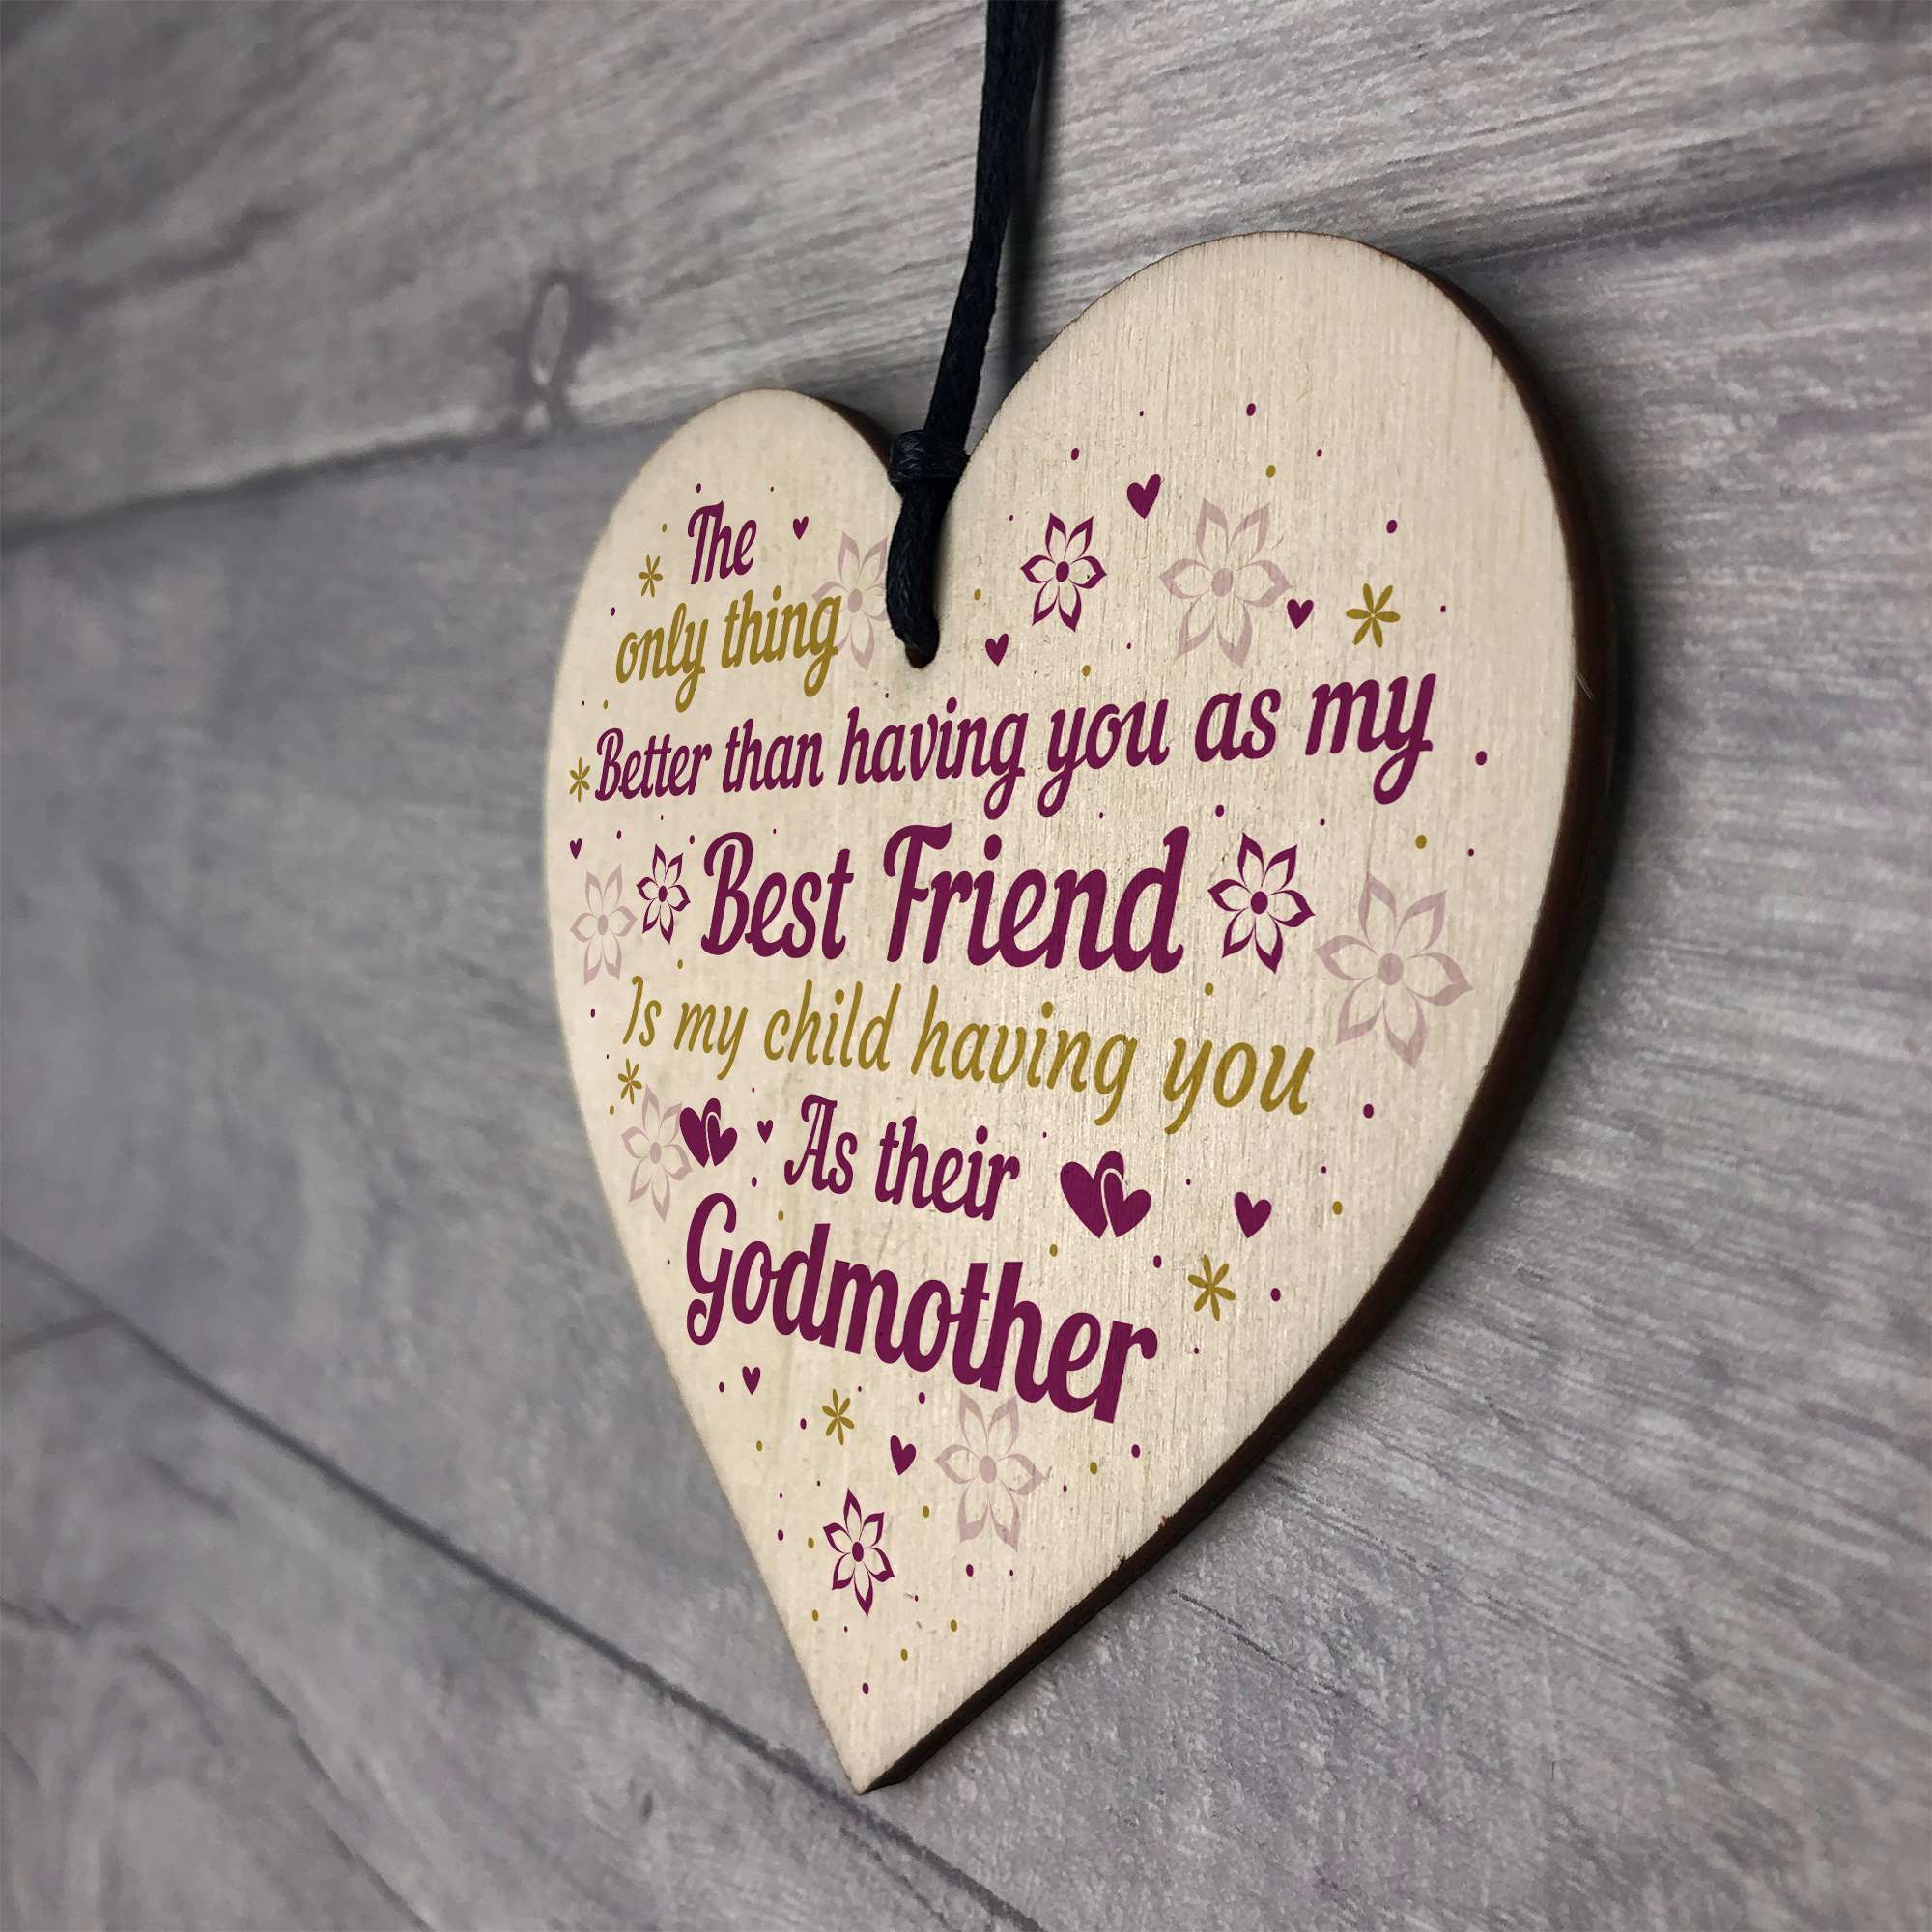 Best Friend Godmother Ts Wooden Heart Plaque Thank You Friend 